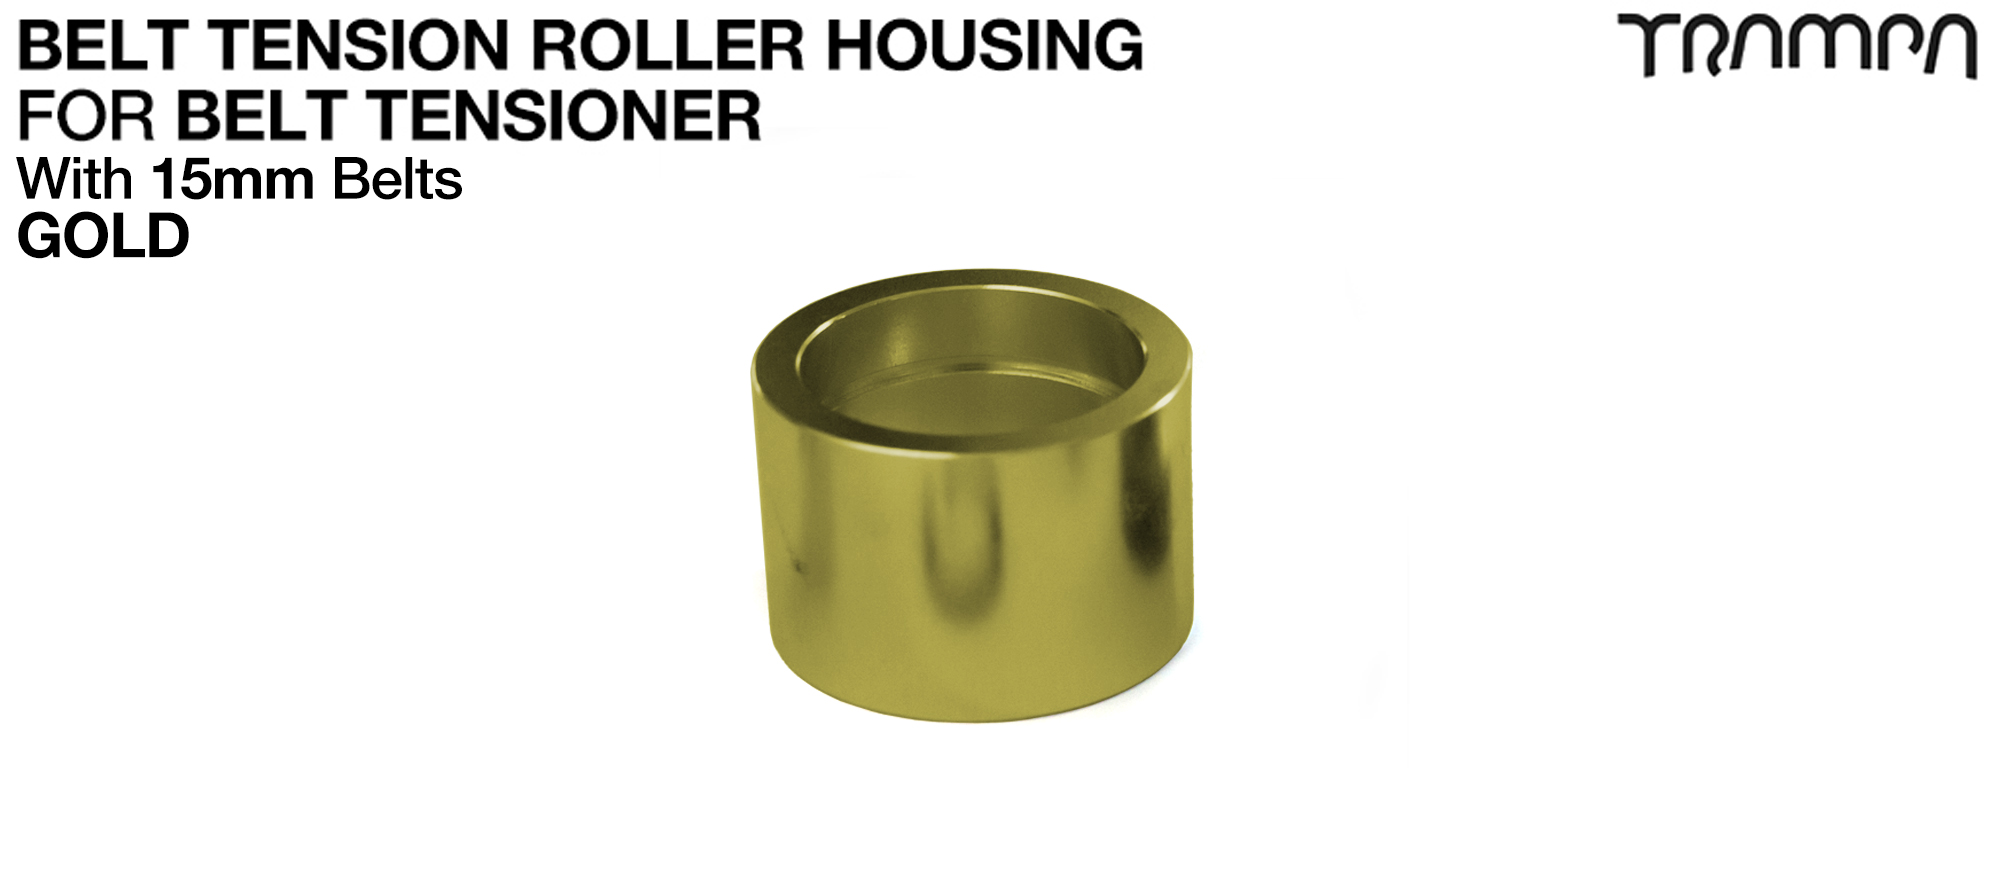 Belt Tension Roller Housing for 15mm Belts - GOLD